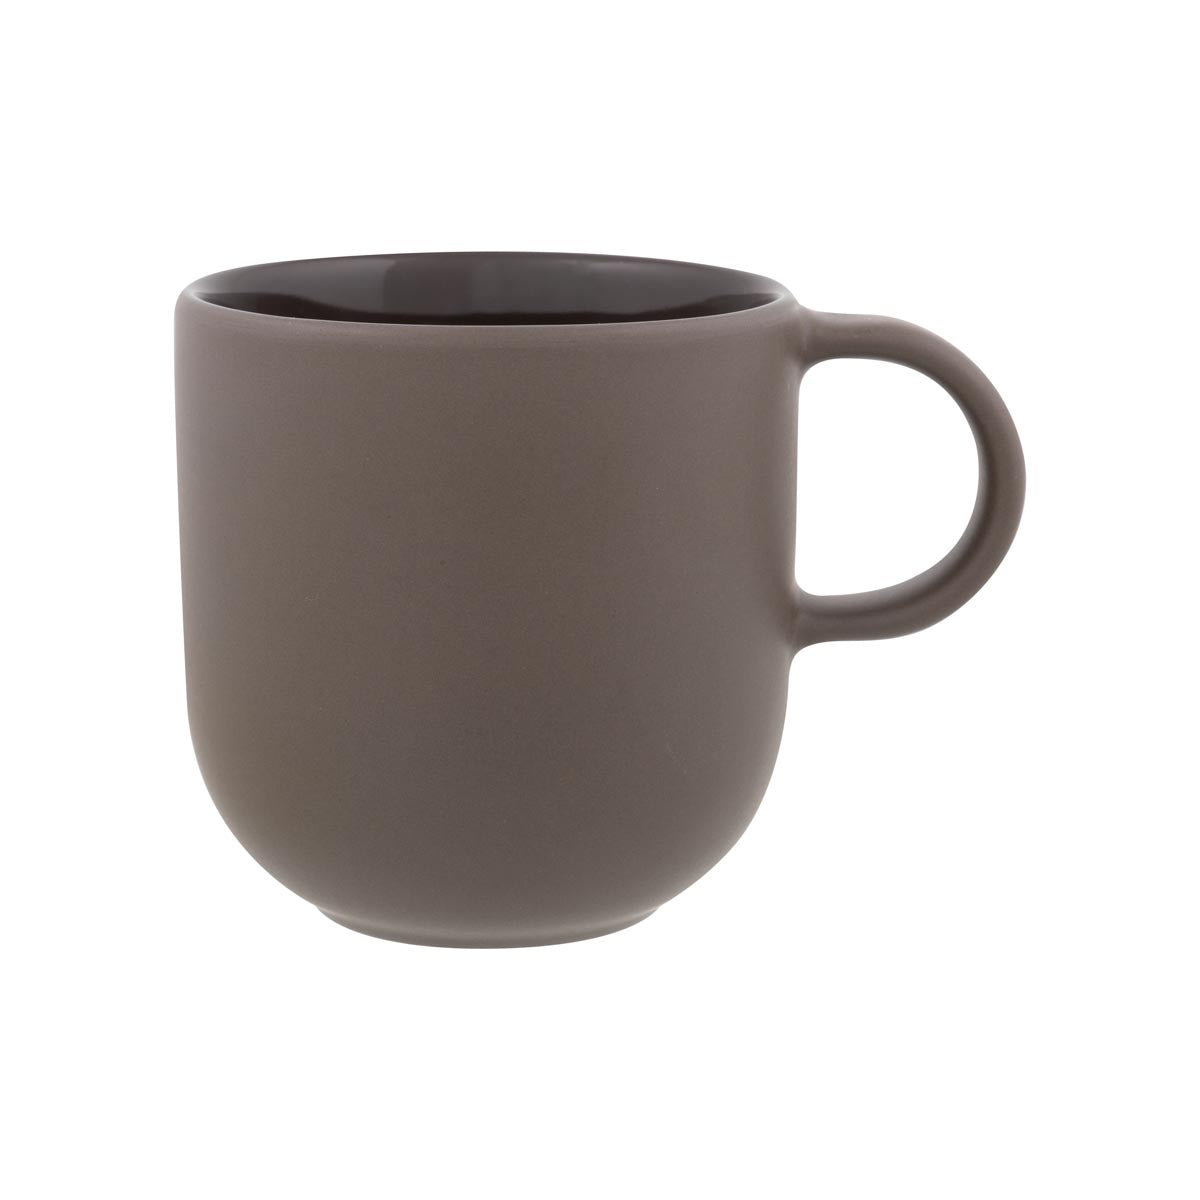 Puisto mug, clay, 3,5 dl